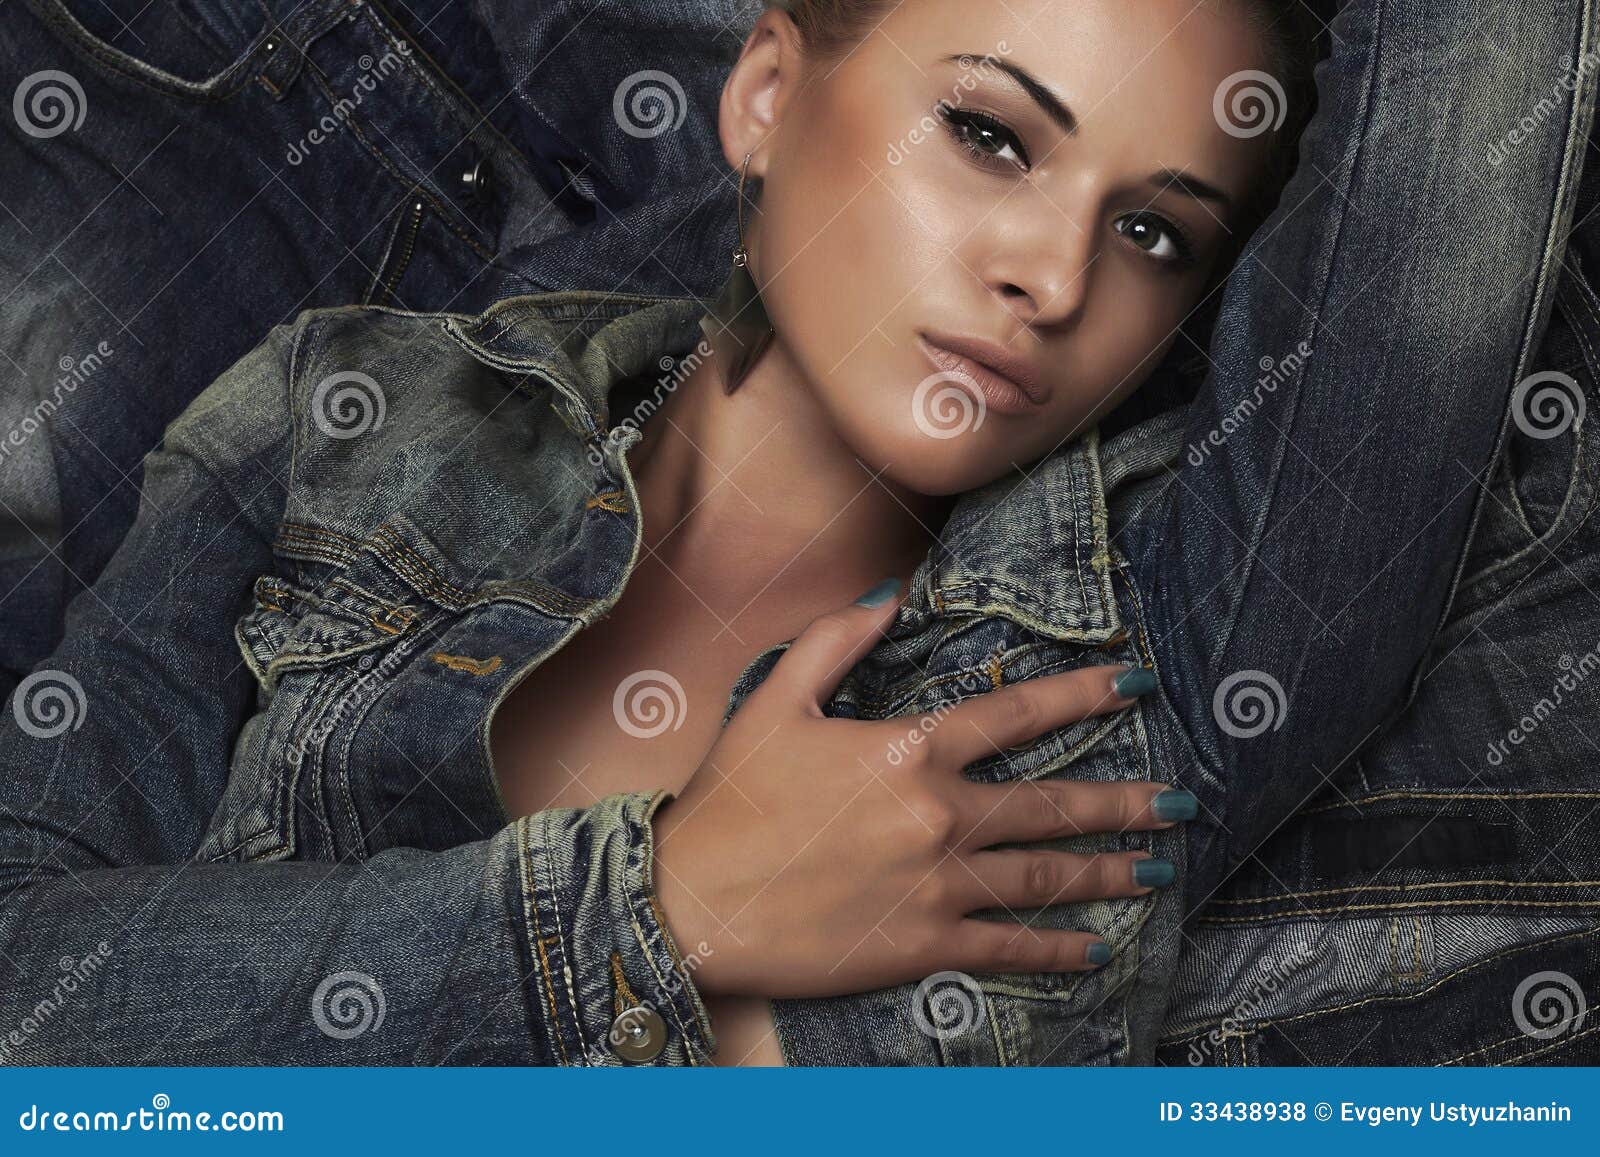 fashion beautiful girl denim jeans wear beauty woman portrait 33438938